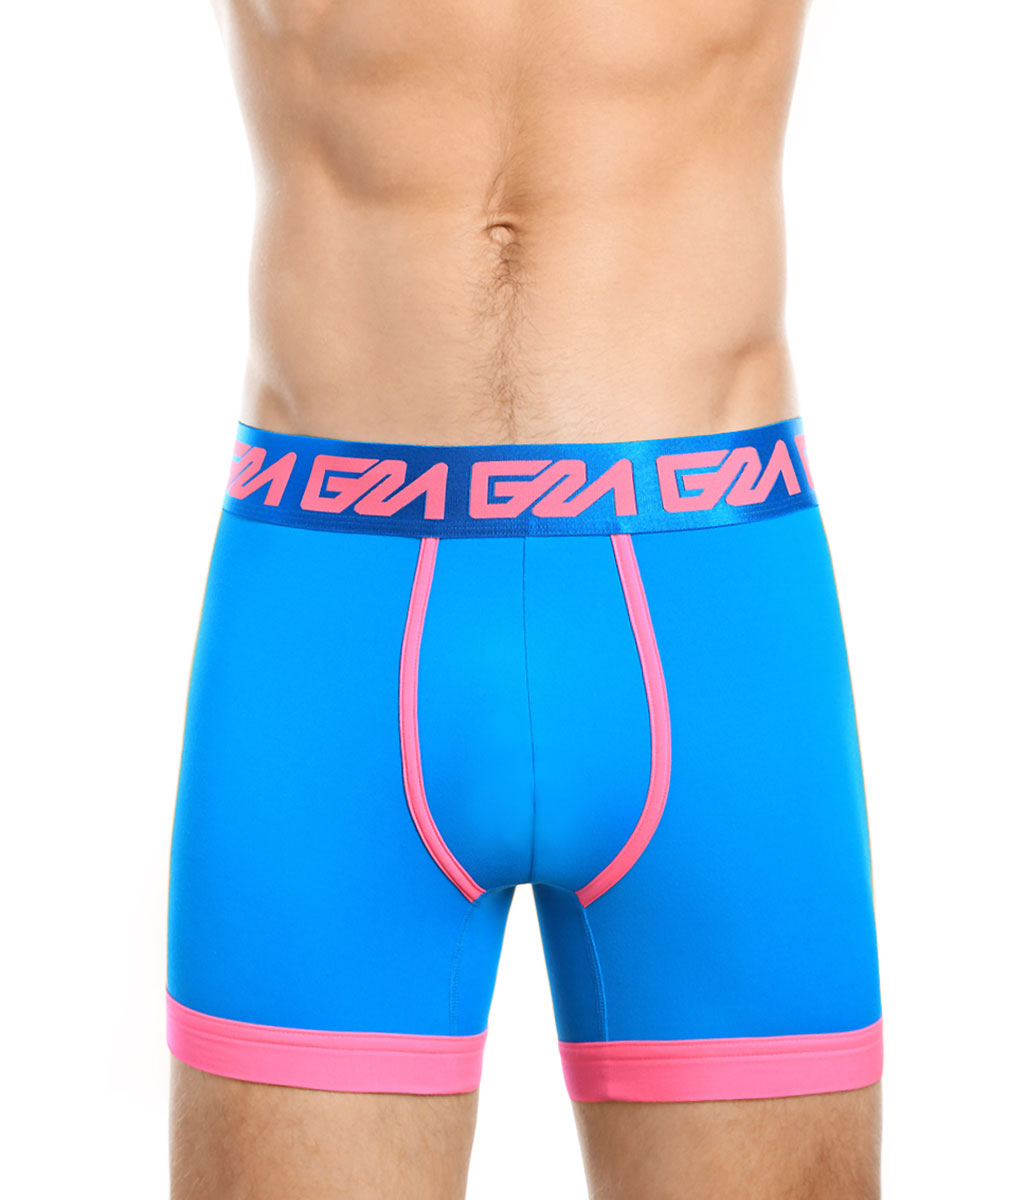 Garcon Model Boxer Brief - Underwear Expert